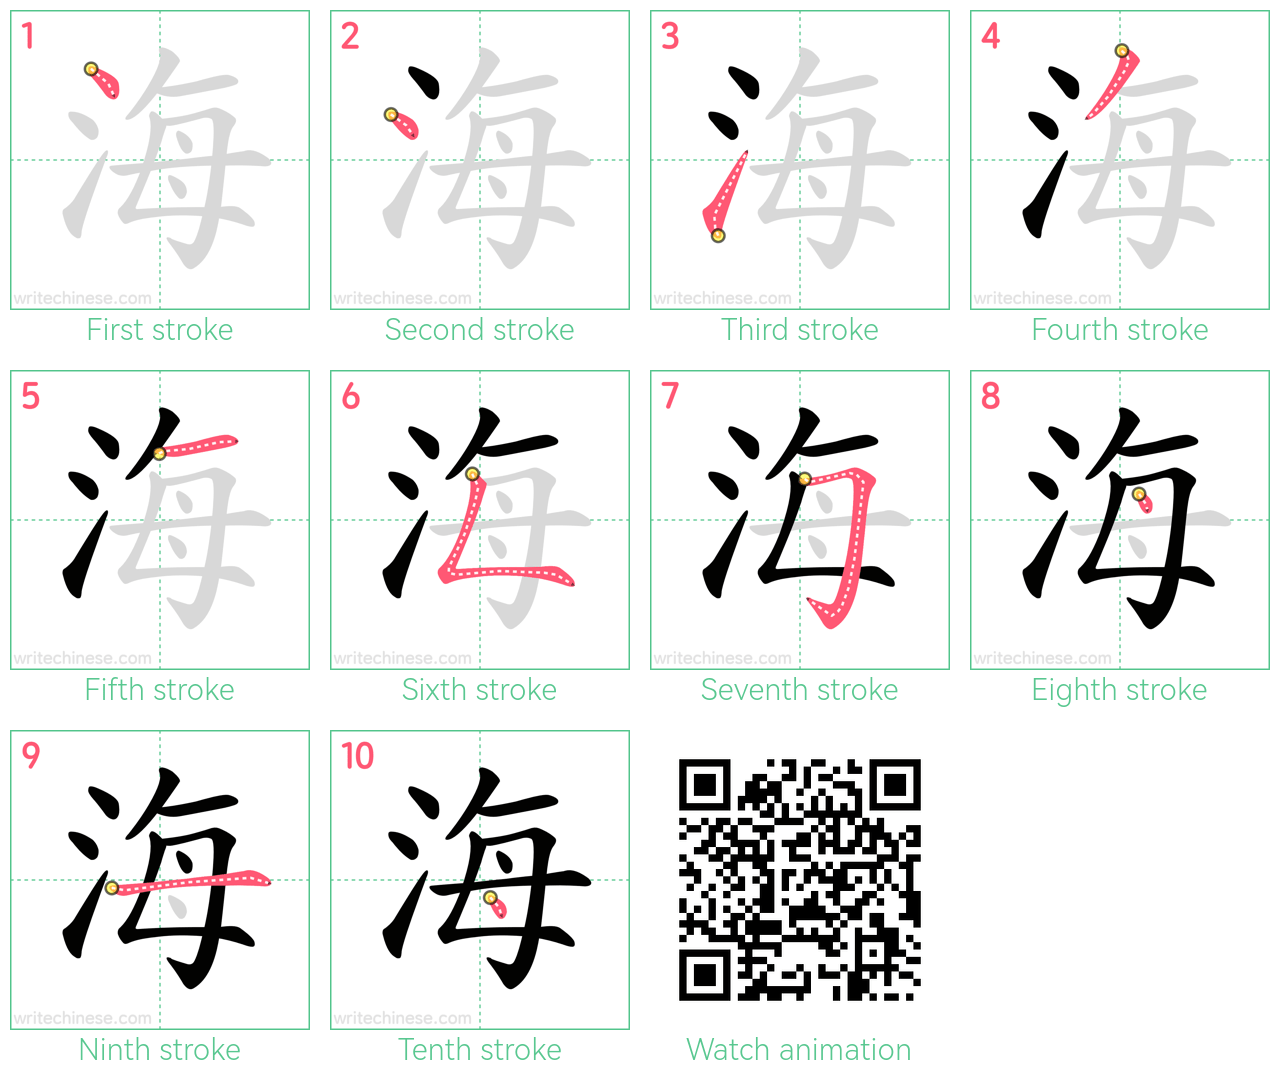 海 step-by-step stroke order diagrams